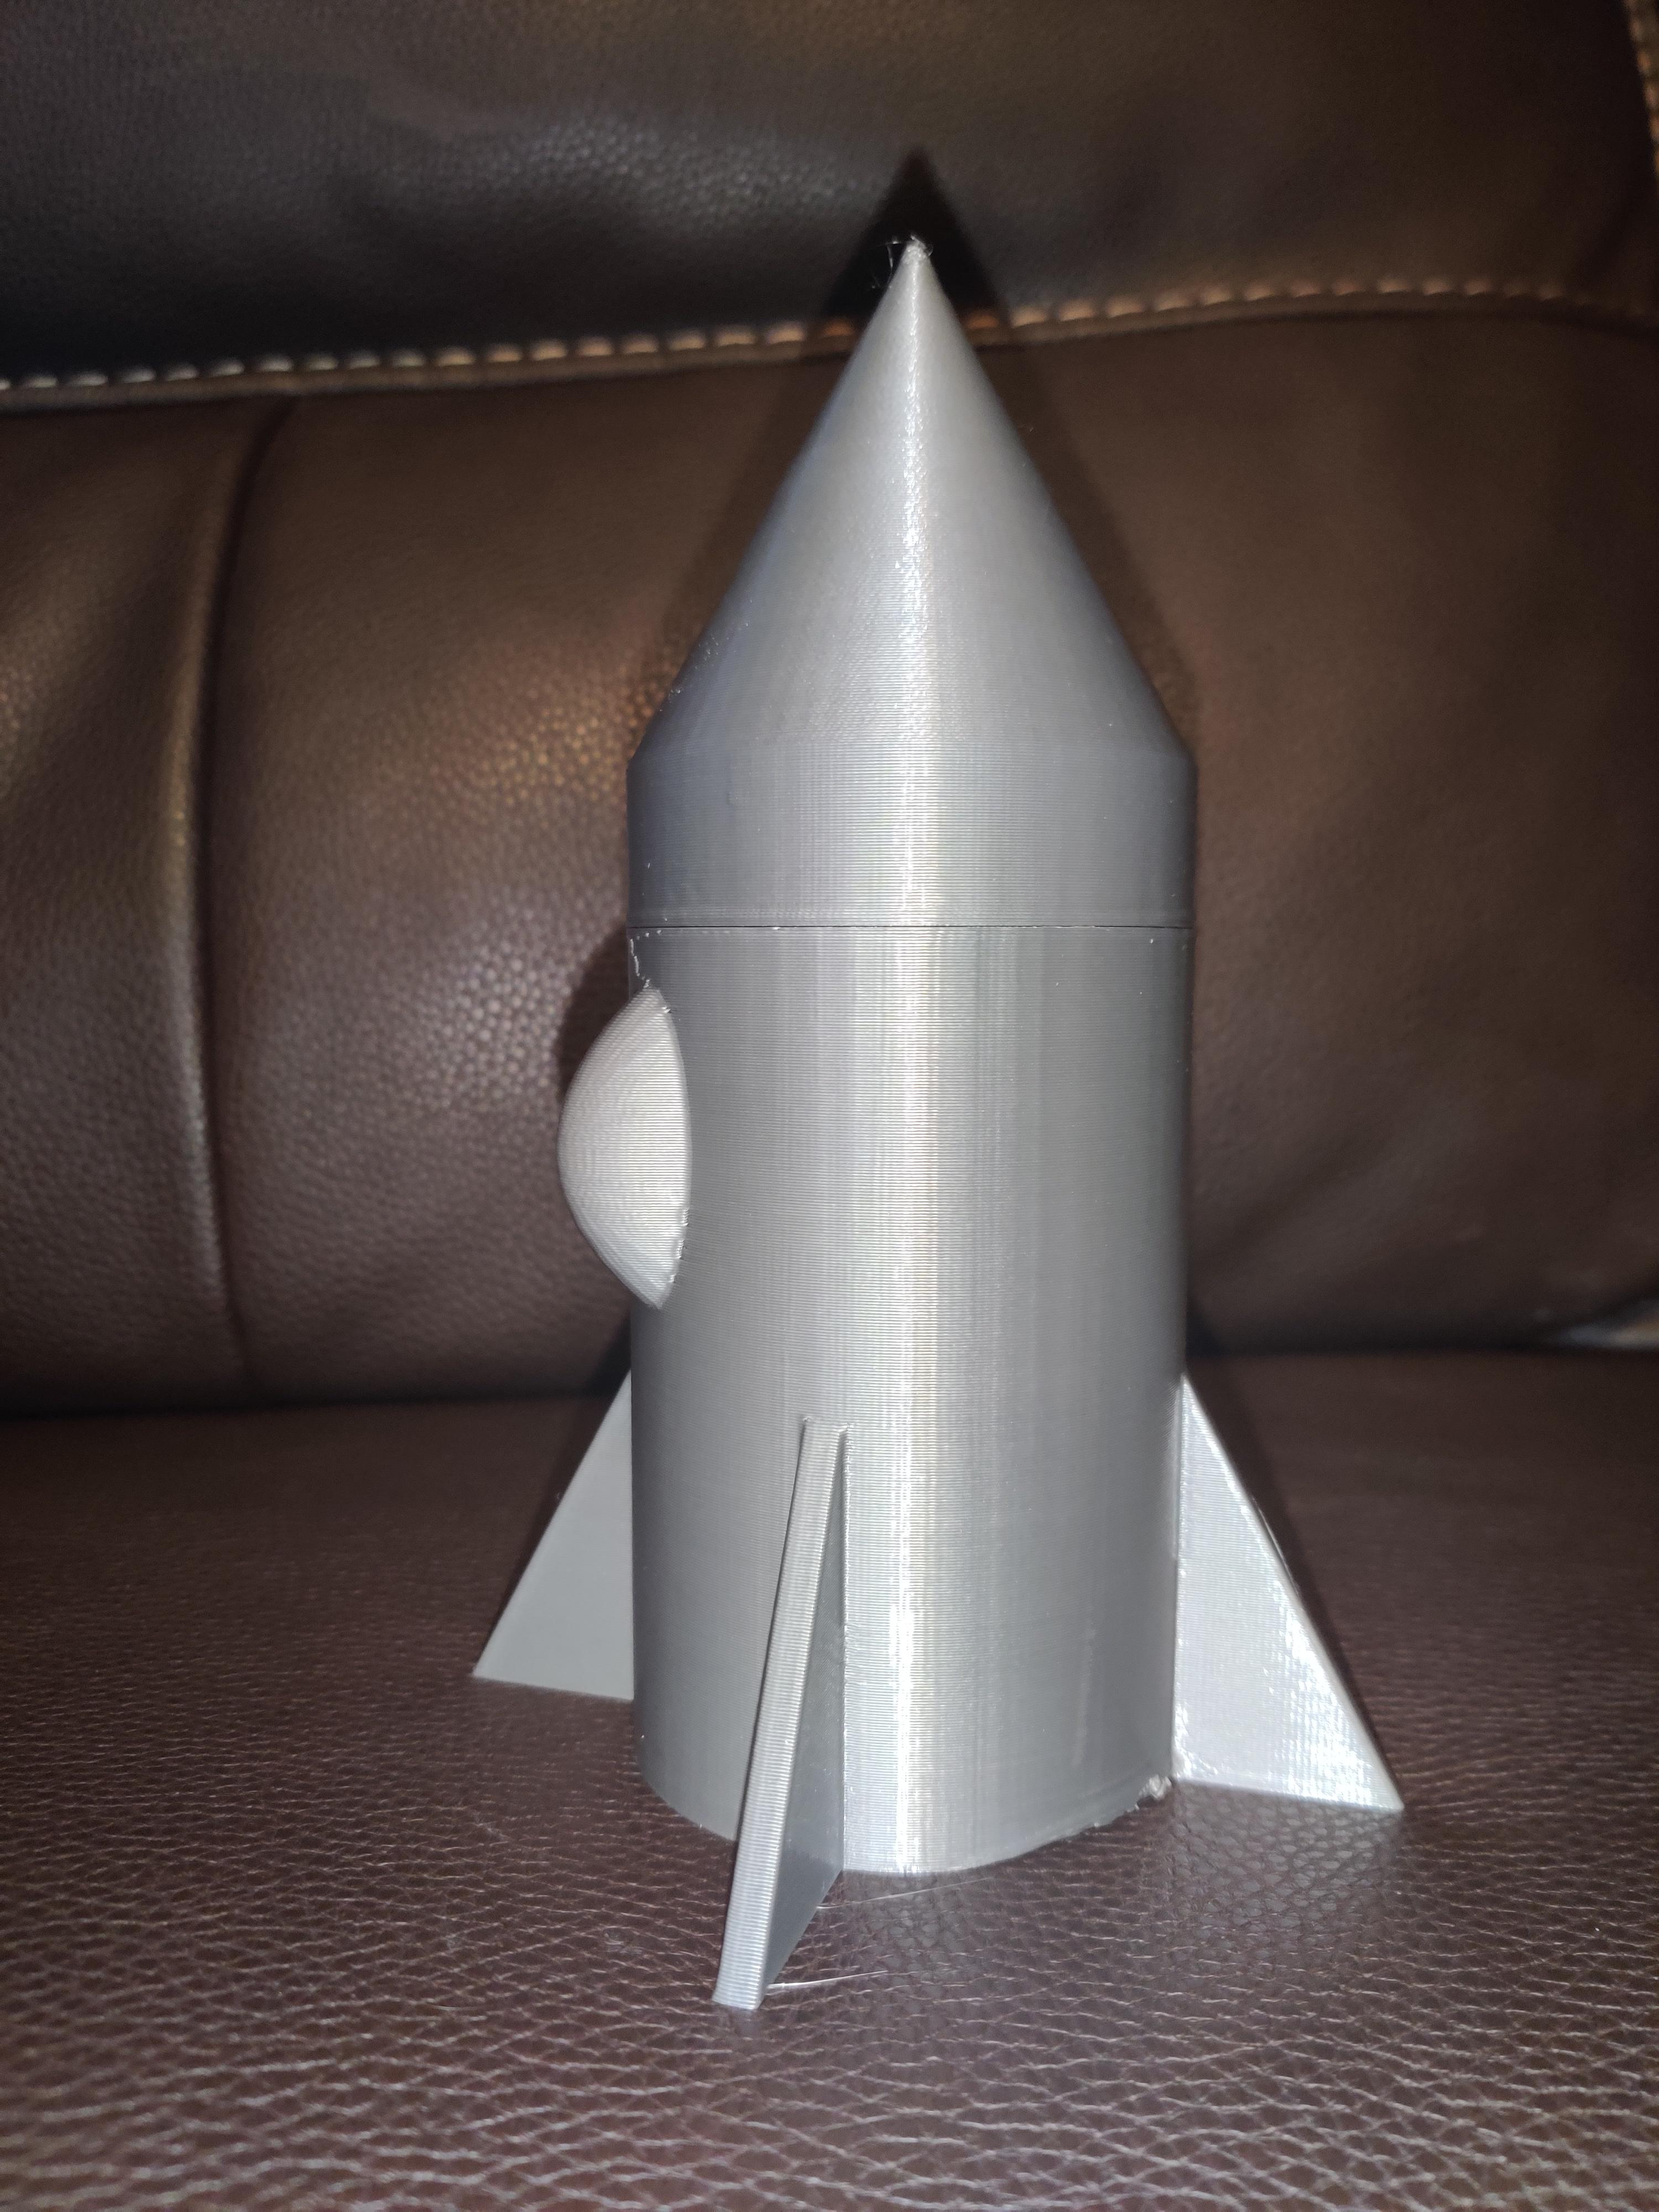 12 Oz Can Up Rocket 3d model